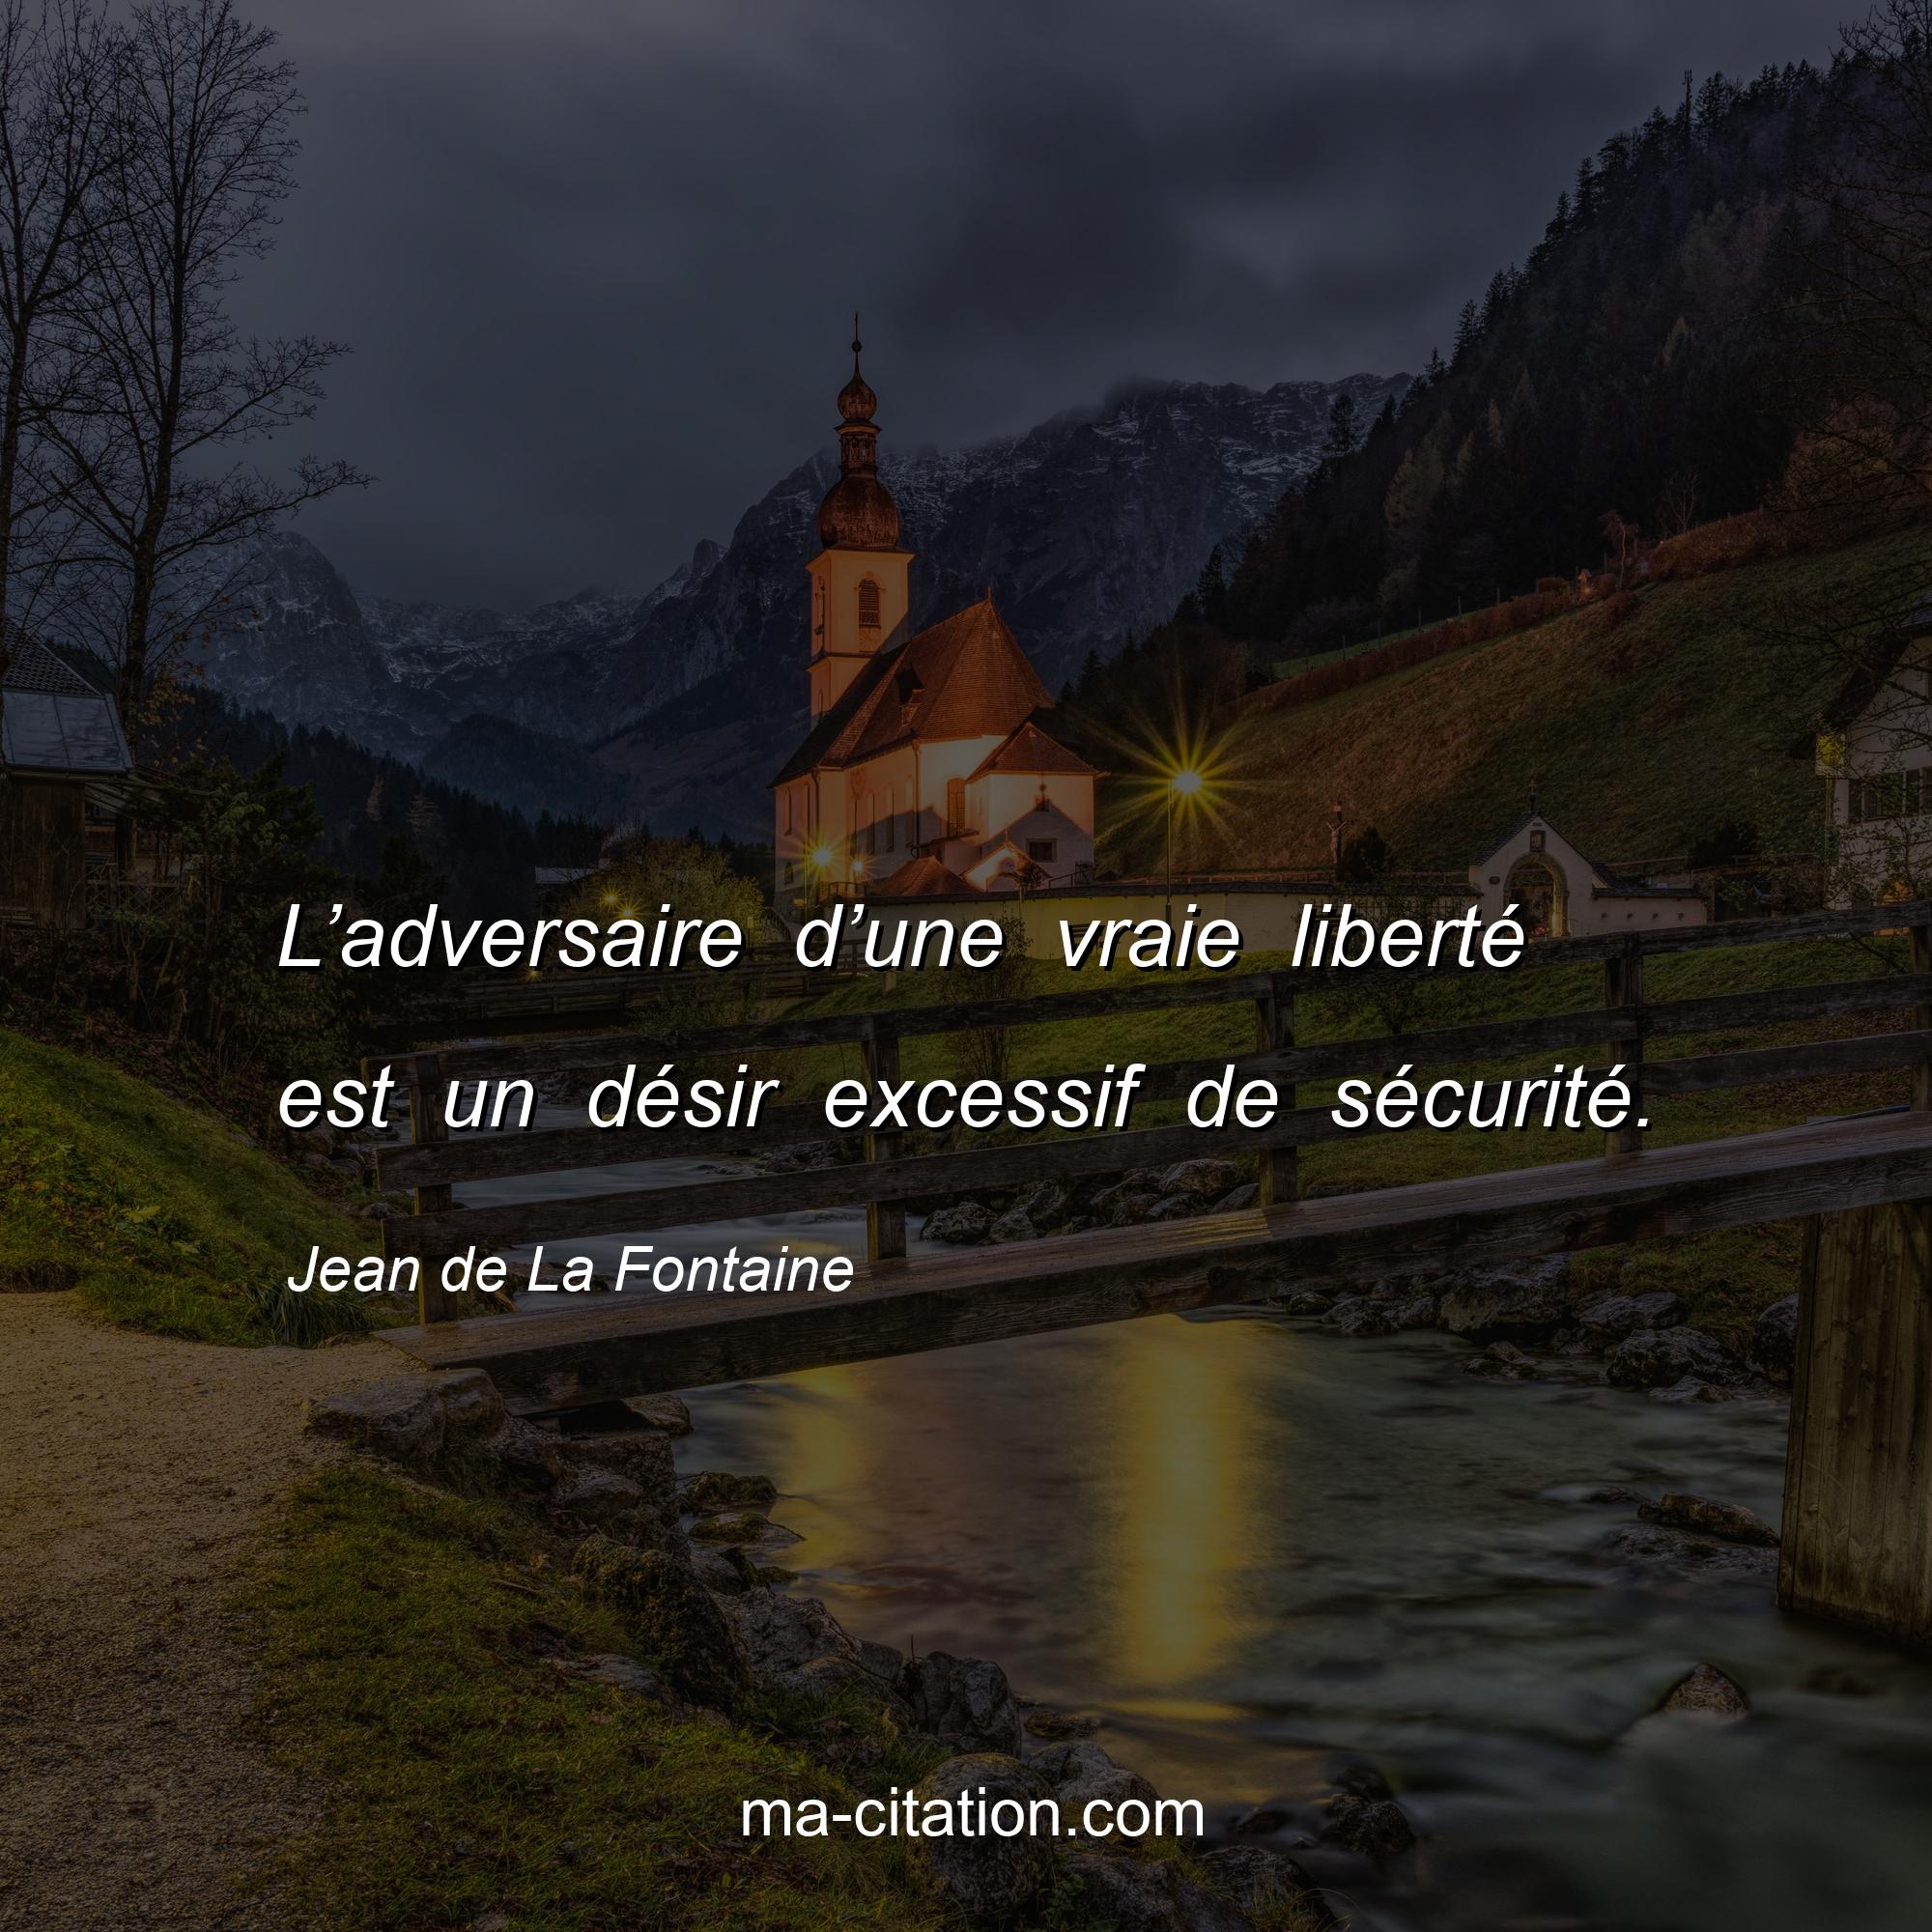 Jean de La Fontaine : L’adversaire d’une vraie liberté est un désir excessif de sécurité.